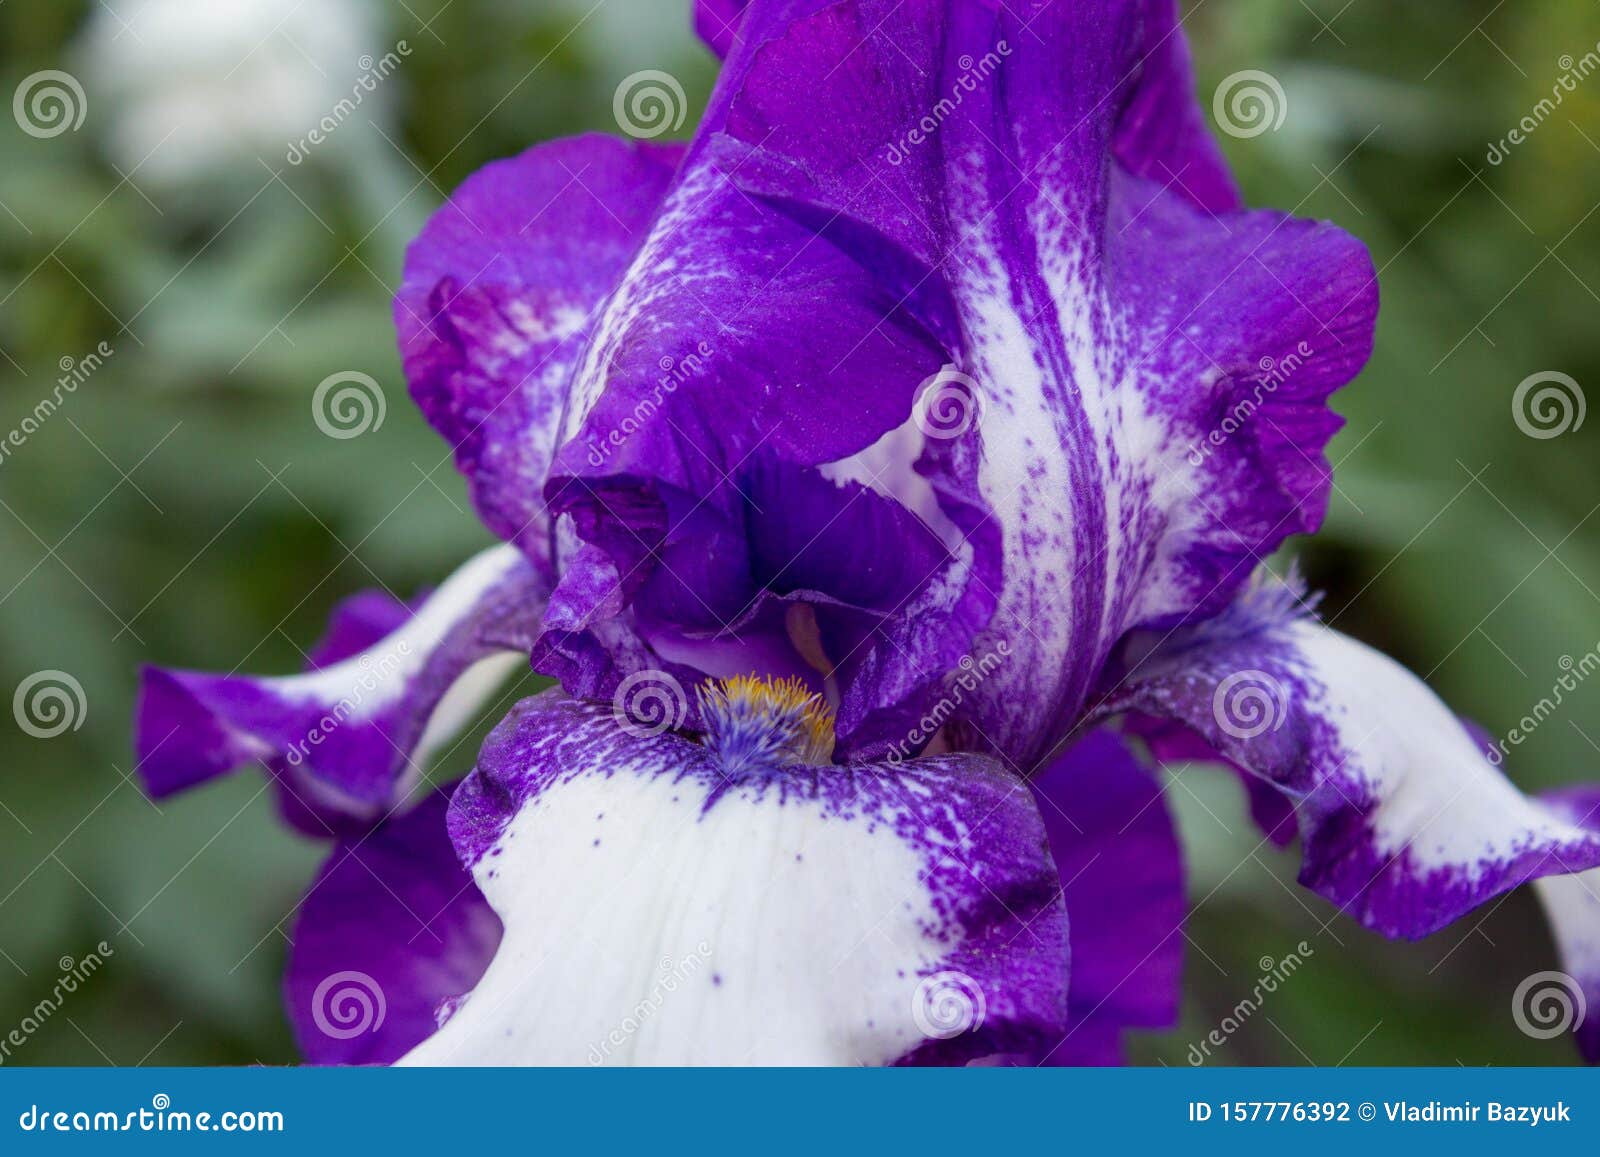 Iris En Violet Et Blanc,Beau Closeup De Fleurs Iris Barbu Allemand Photo  stock - Image du bleu, blanc: 157776392